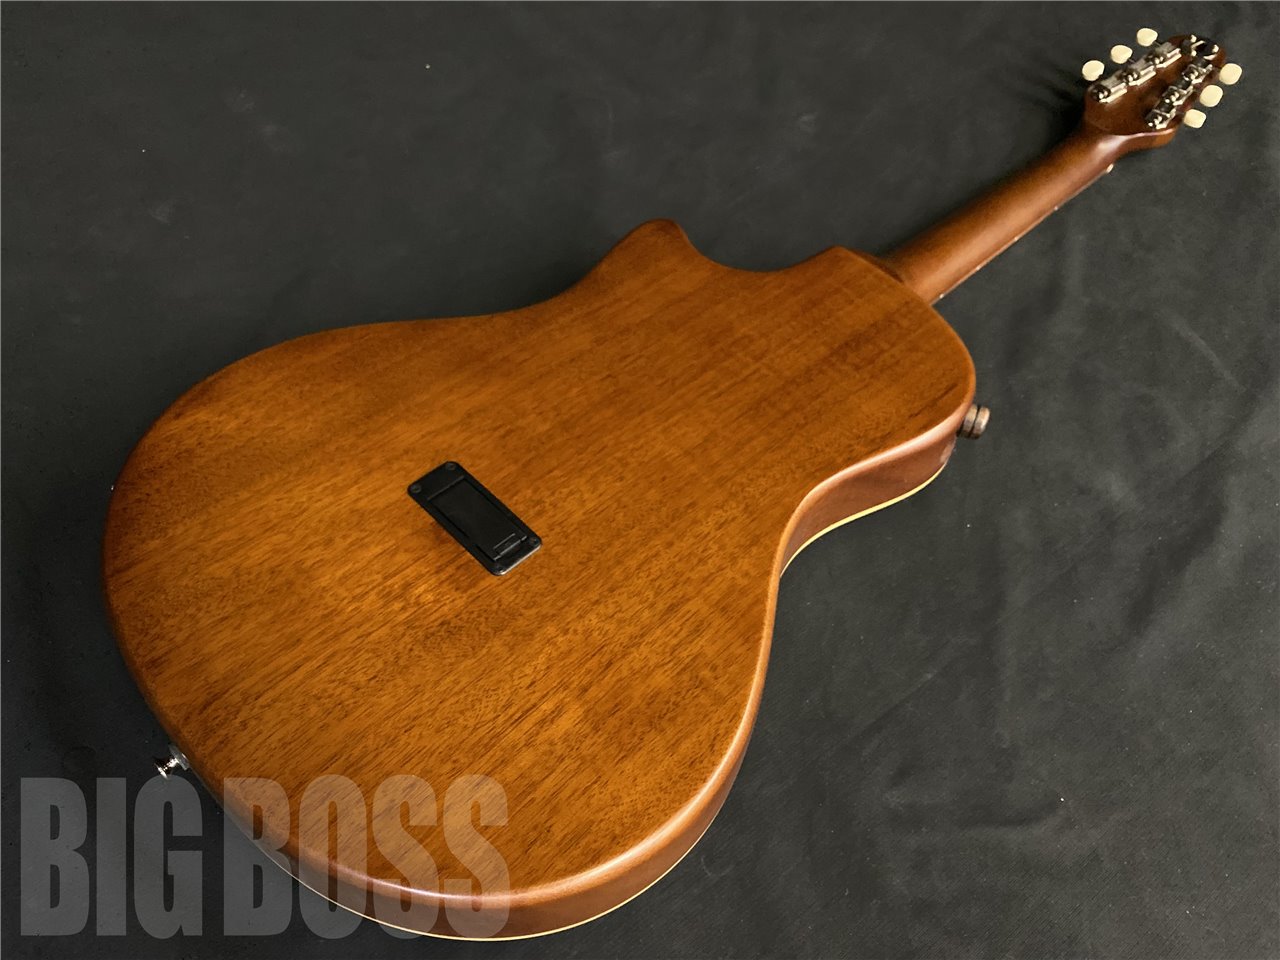 【受注生産】BambooInn(バンブーイン) BambooInn-CE See Thru Red (エレクトリックアコースティックギター)